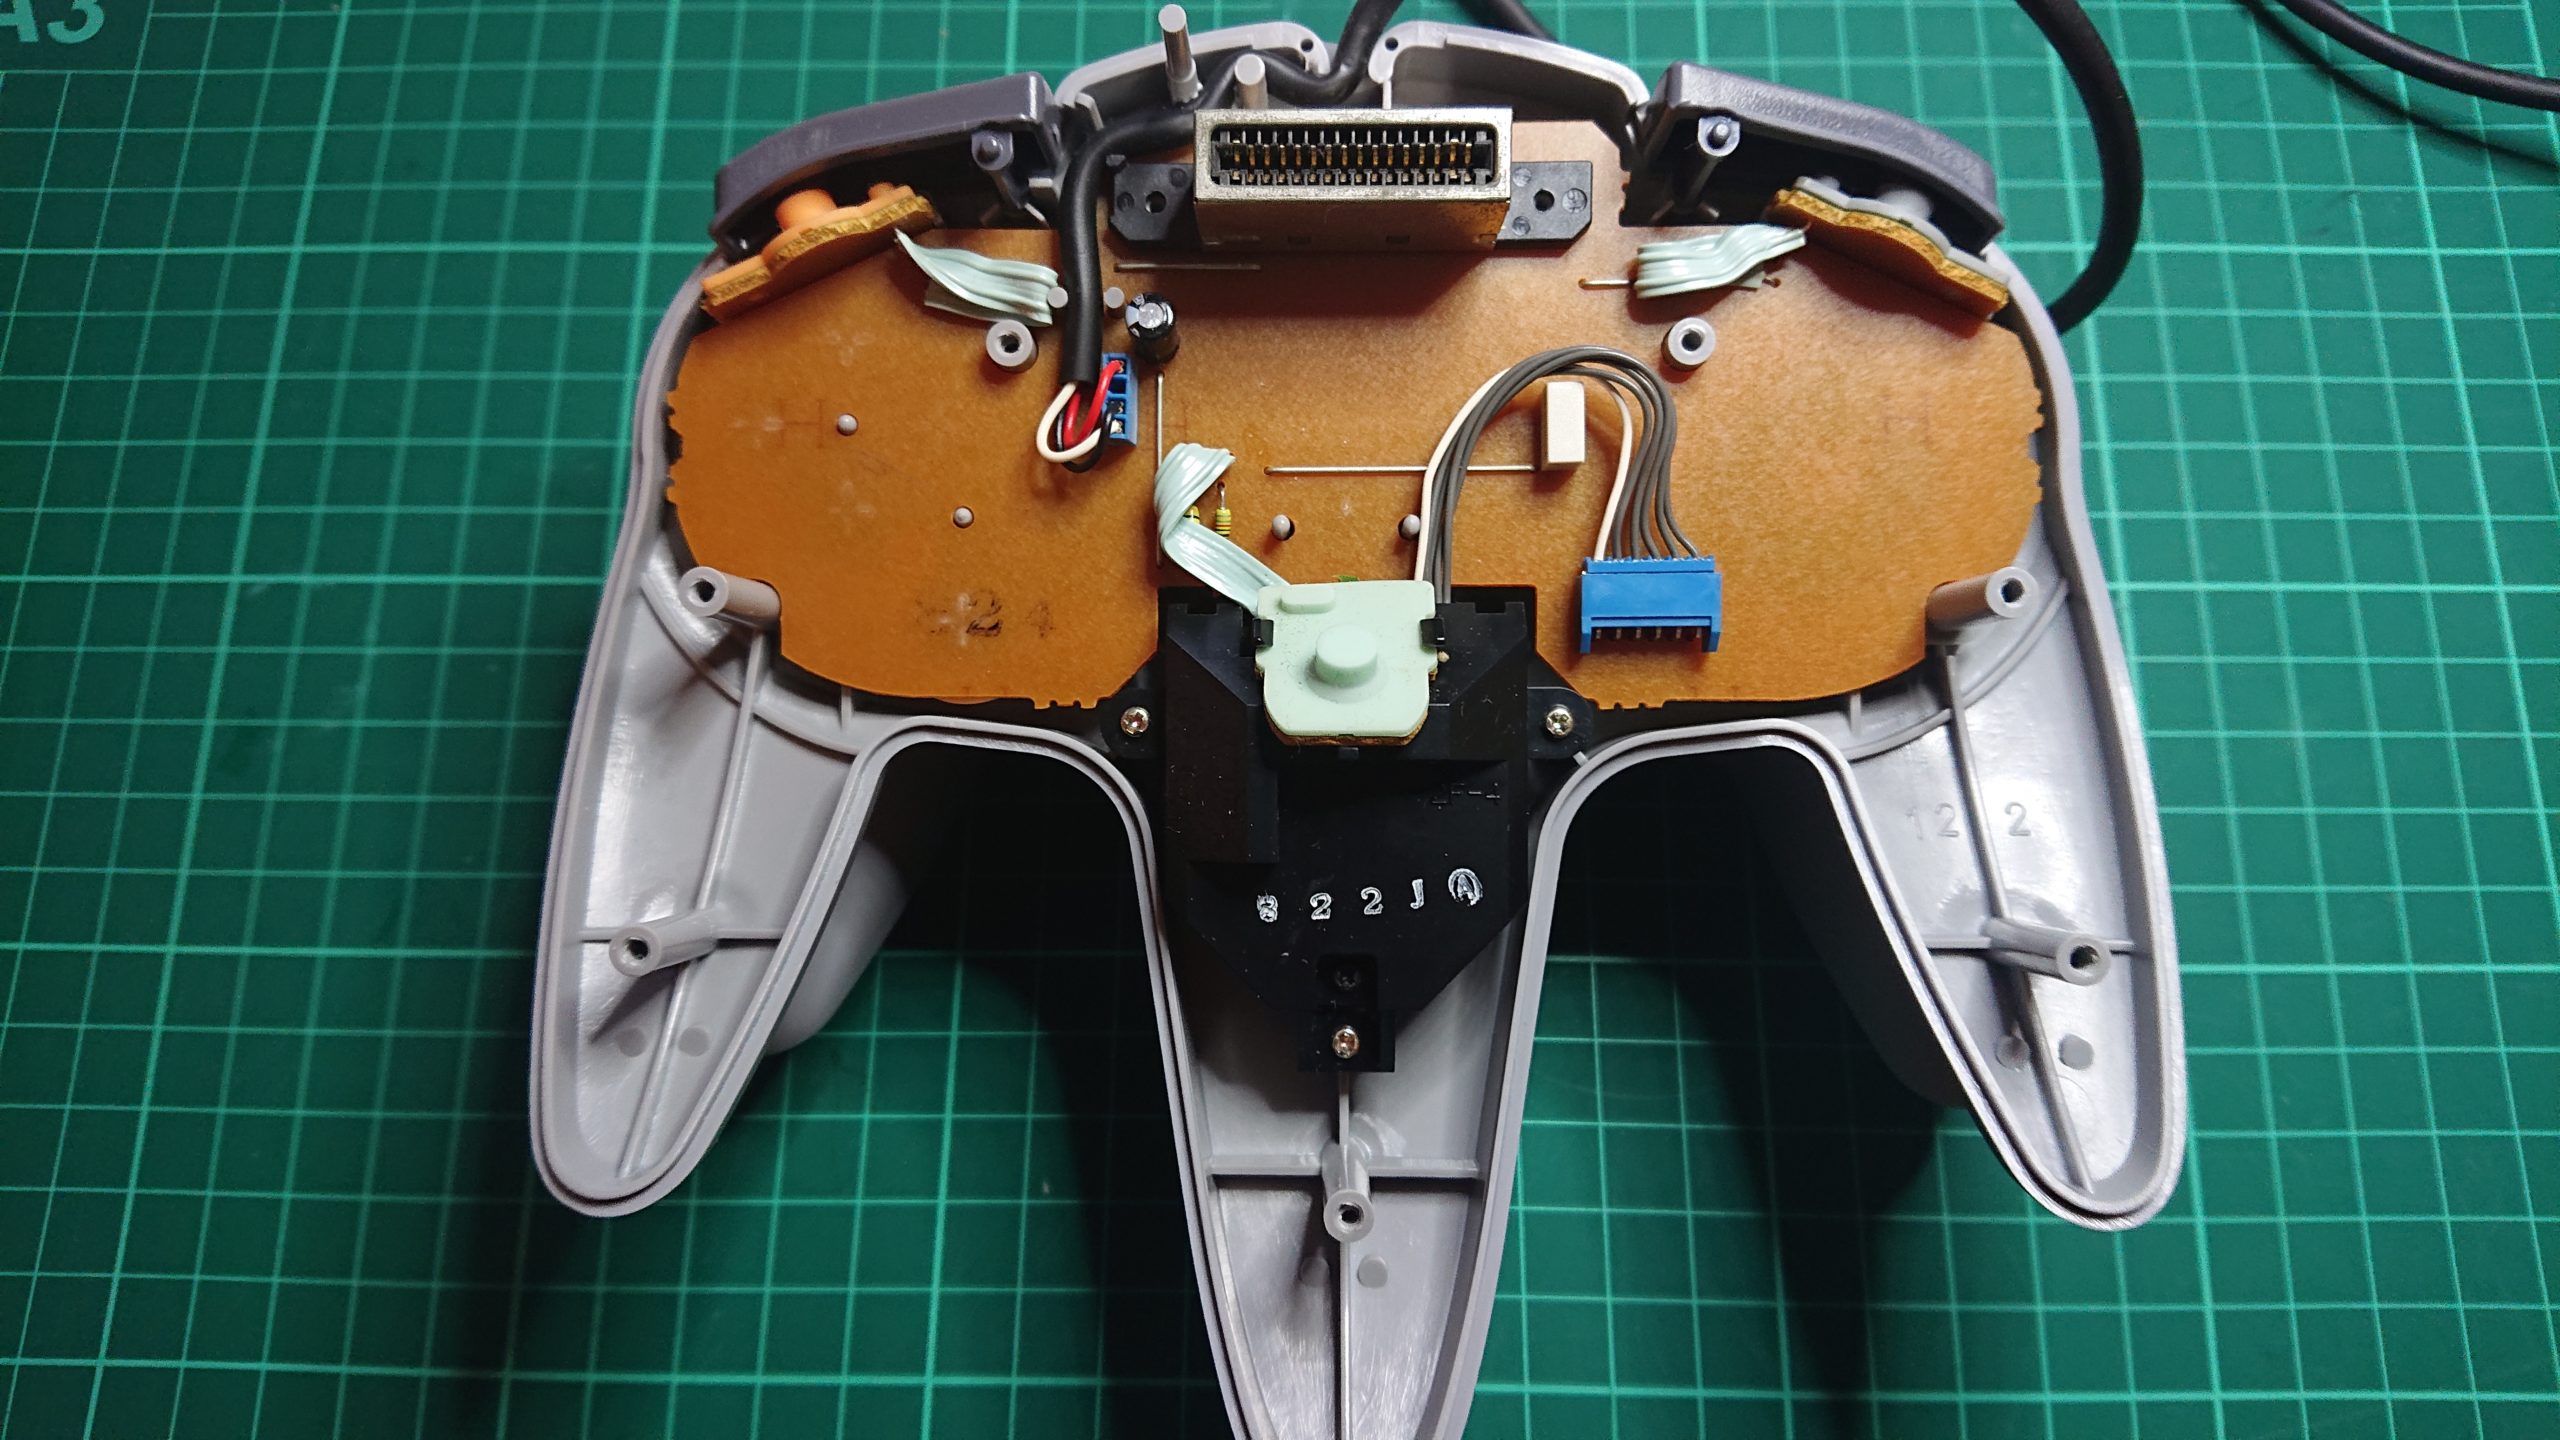 Réparation du stick analogique d'une manette Nintendo 64 - Slimart